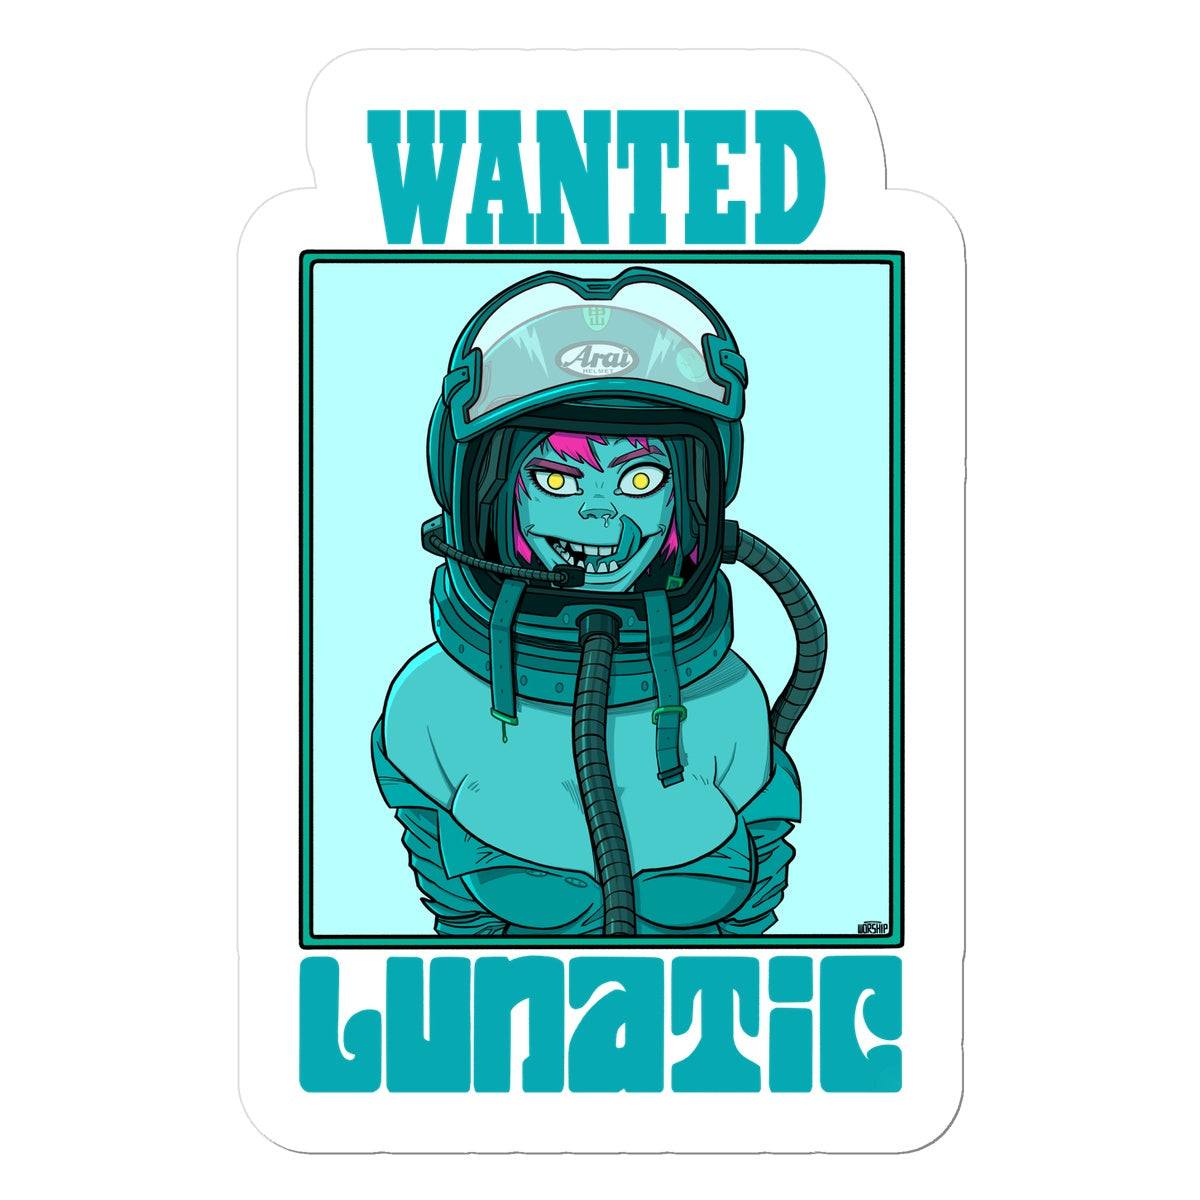 Unique and cool Gorillaz-style lunatic sticker illustration